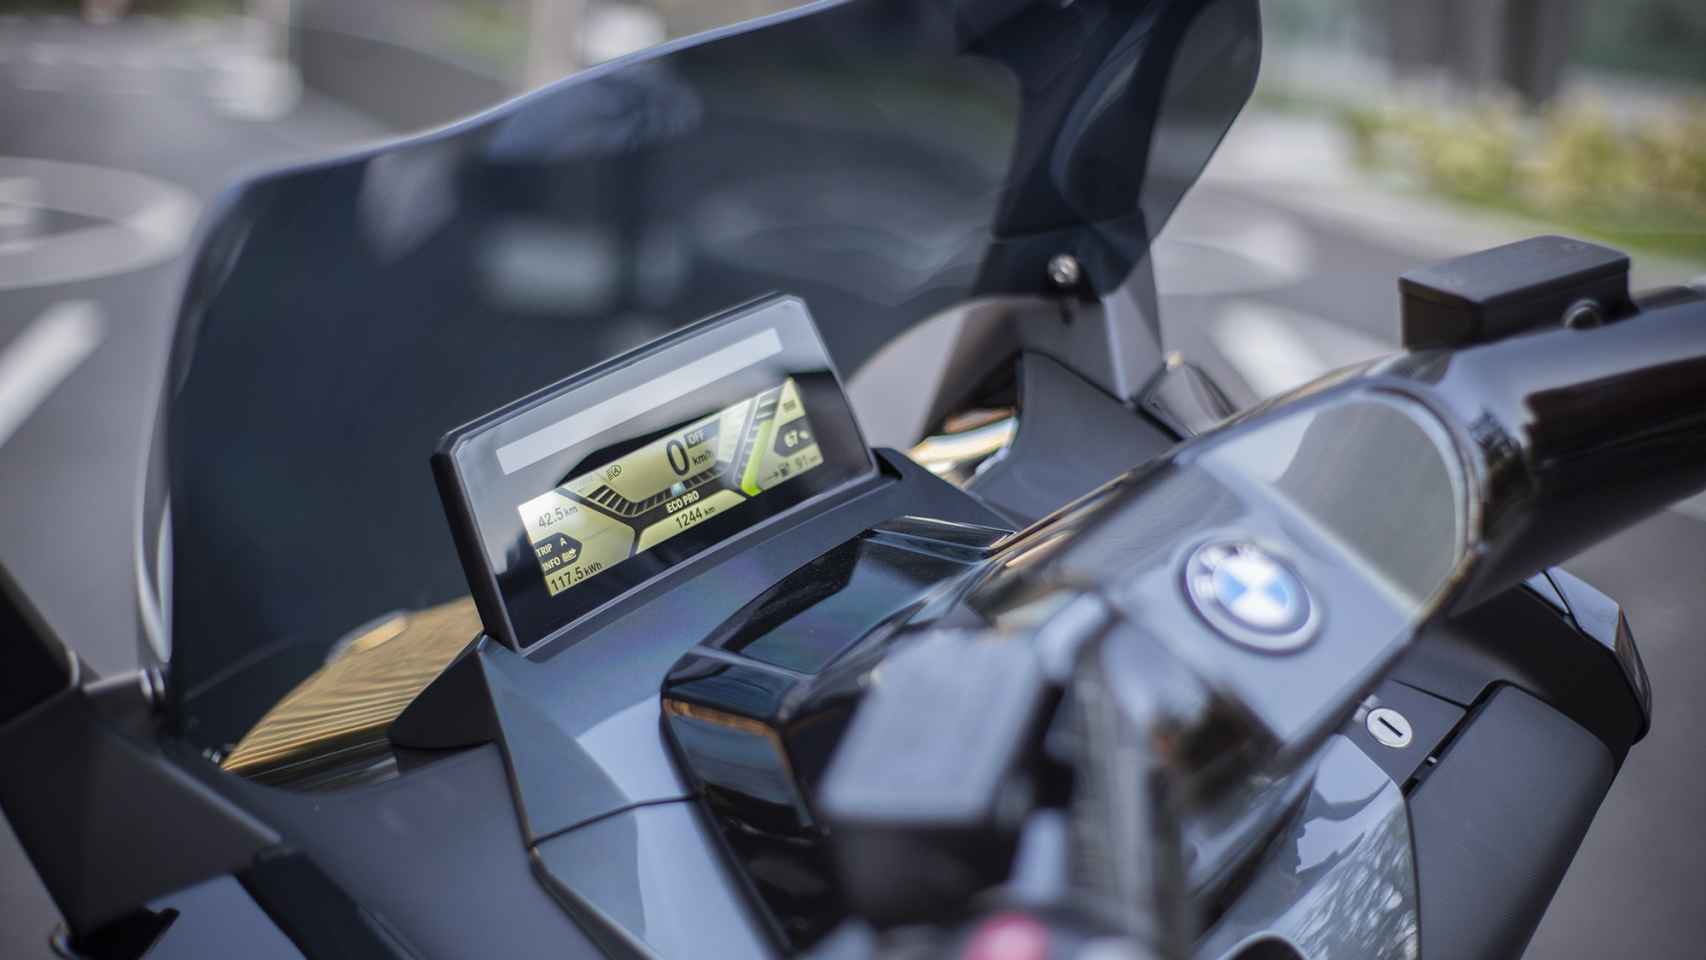 BMW C Evolution, moto eléctrica más vendida